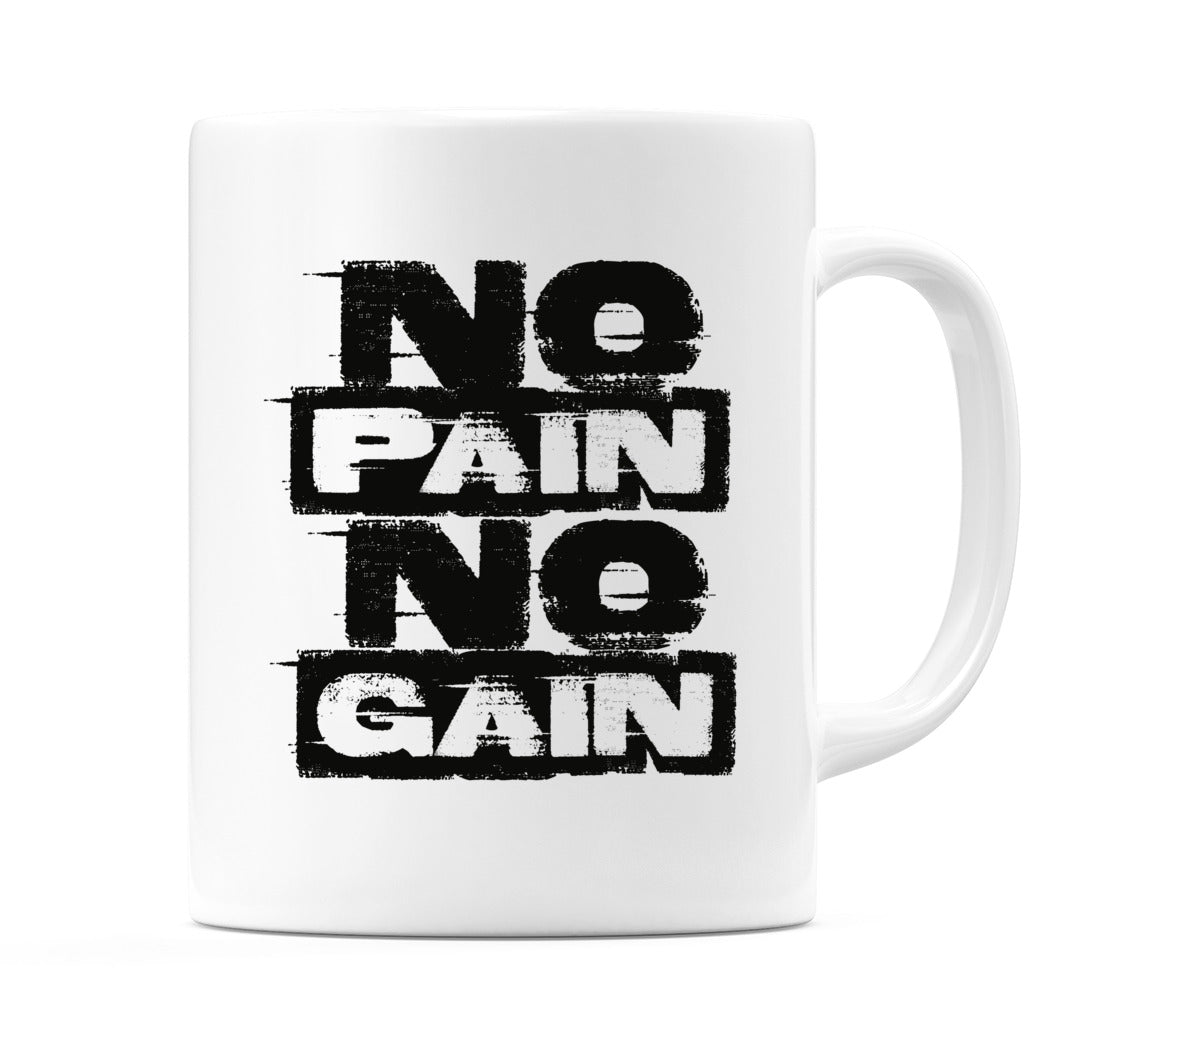 No Pain No Gain Mug